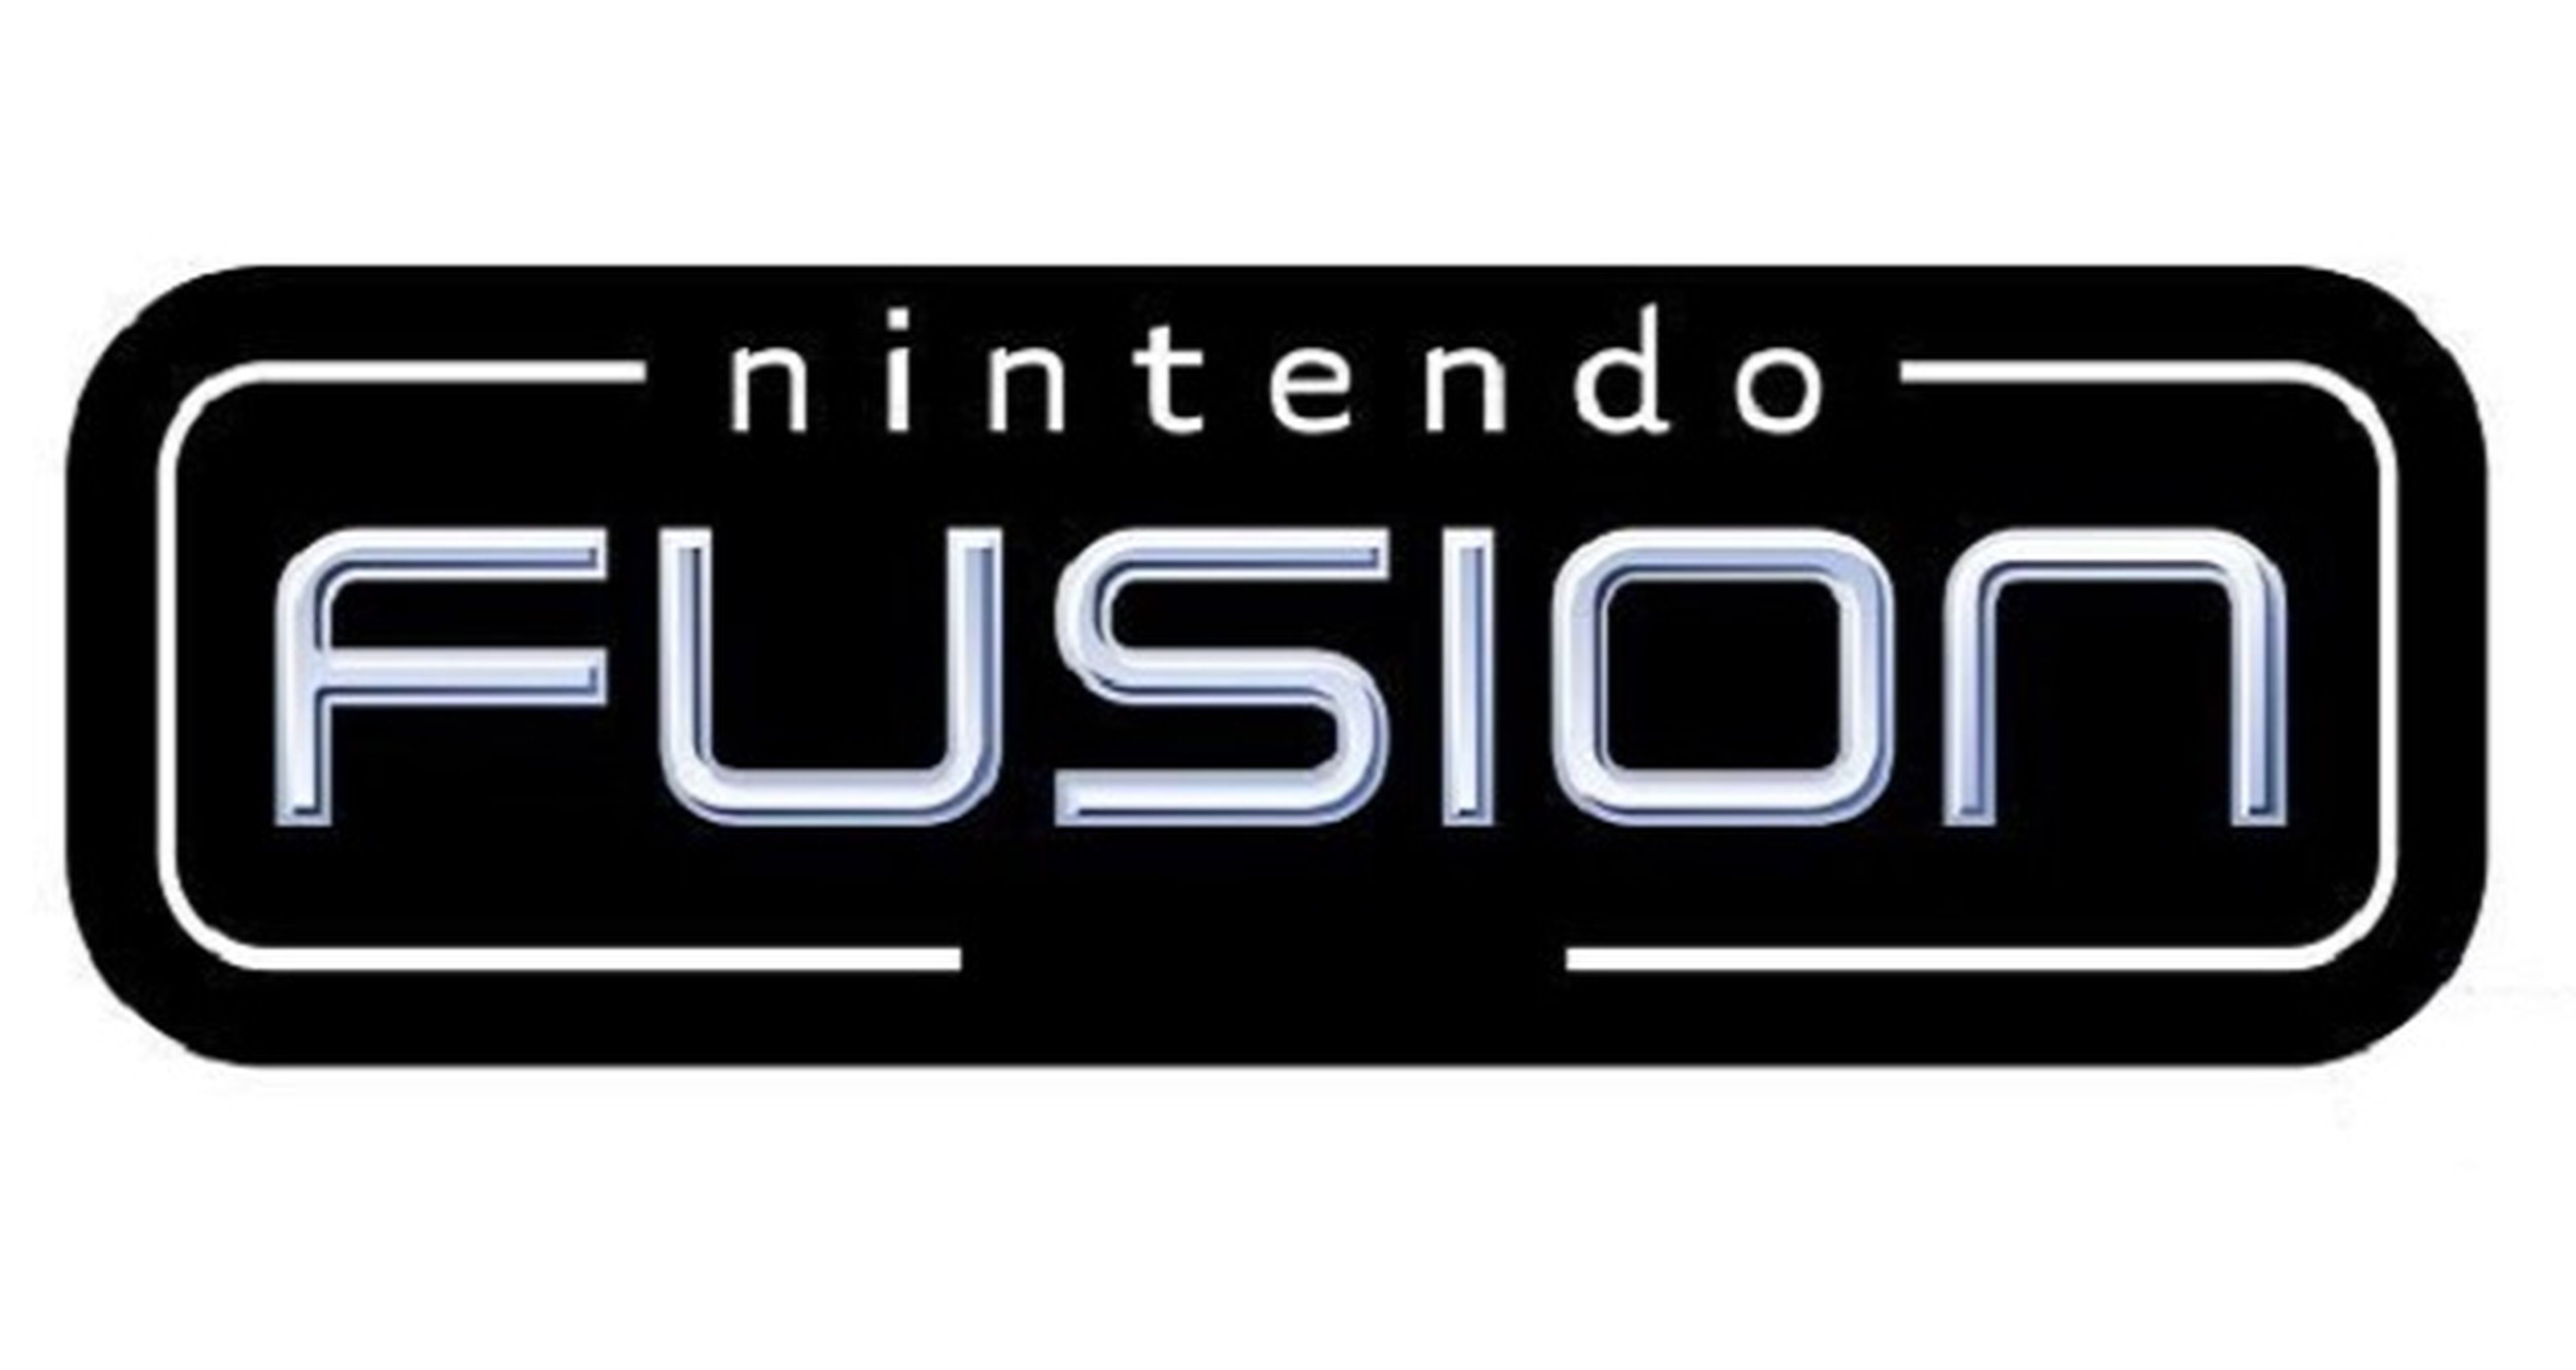 ¿Qué es en realidad Nintendo Fusion?